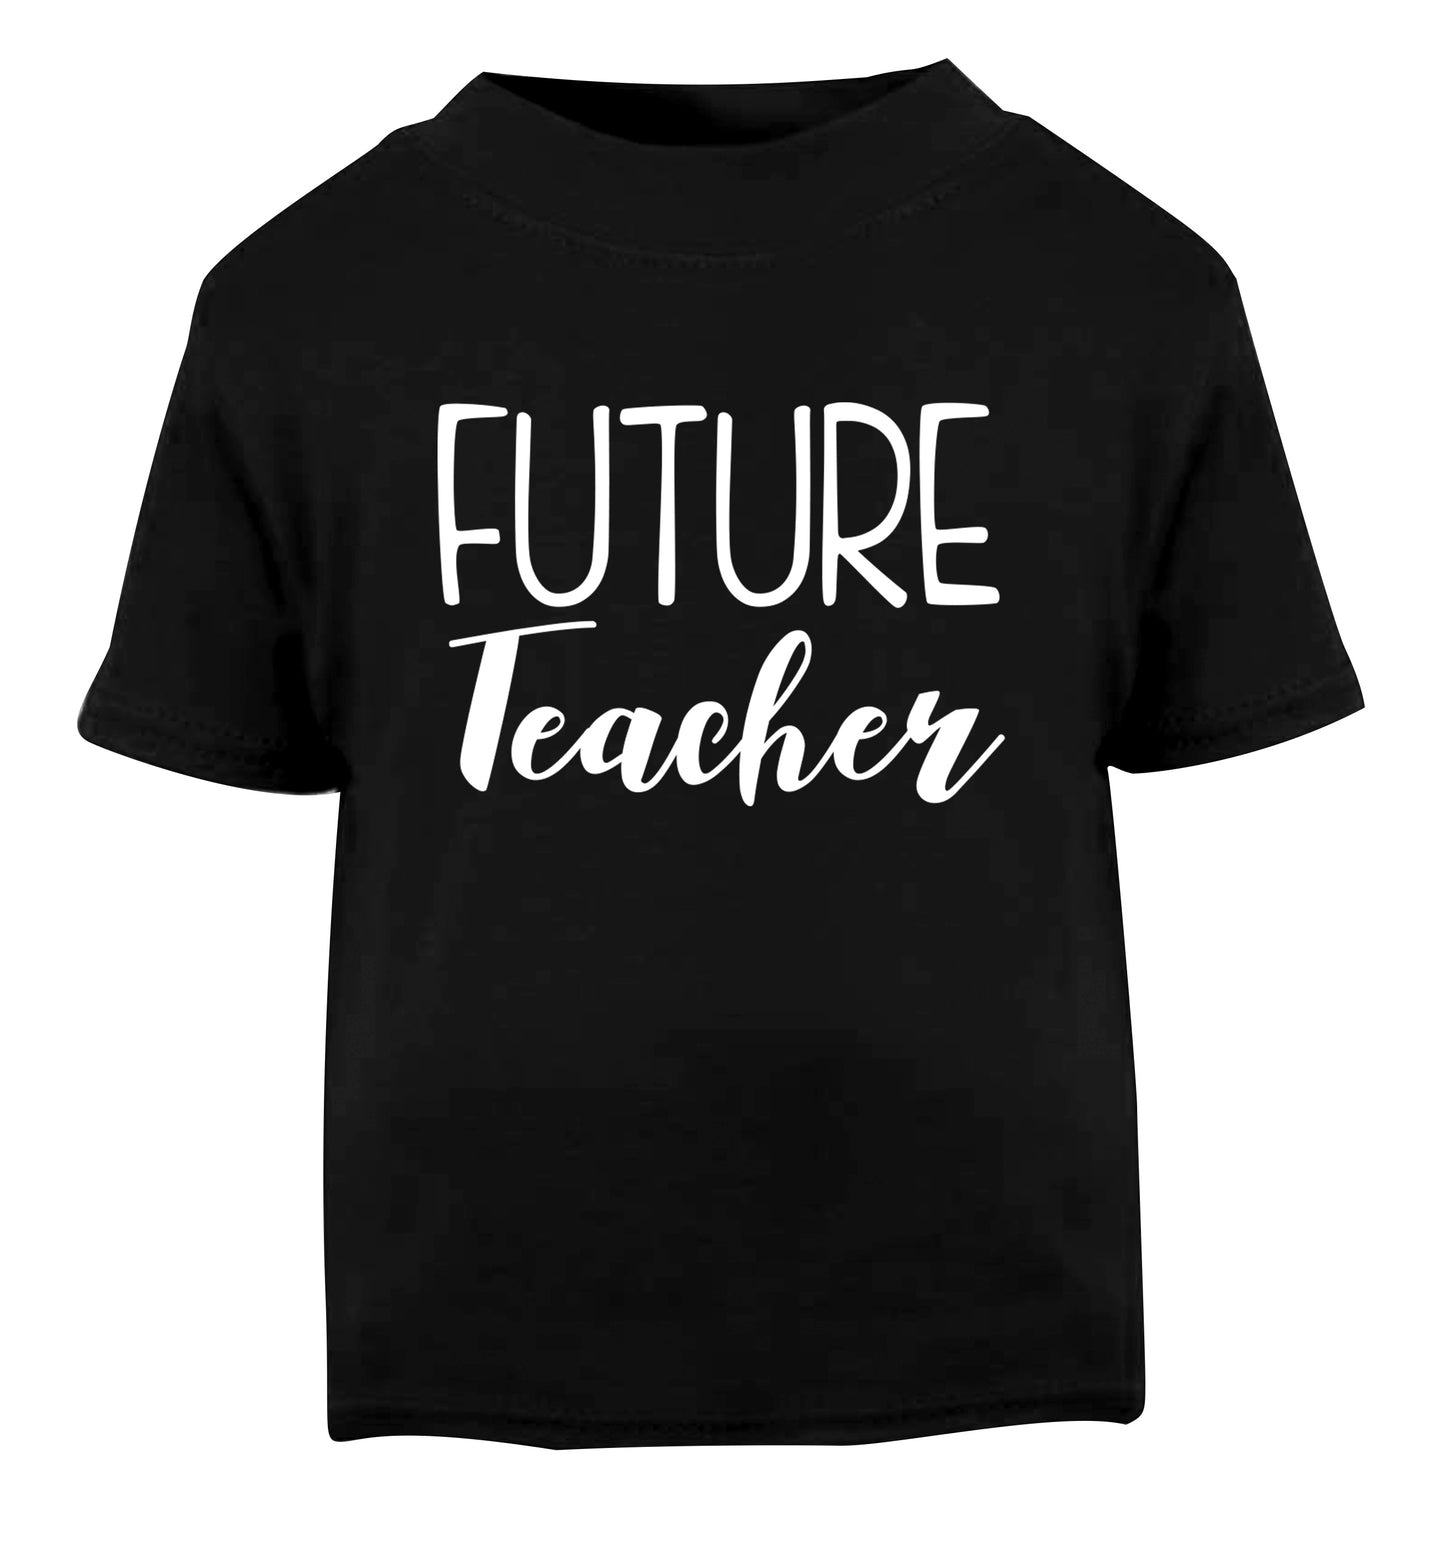 Future teacher Black Baby Toddler Tshirt 2 years